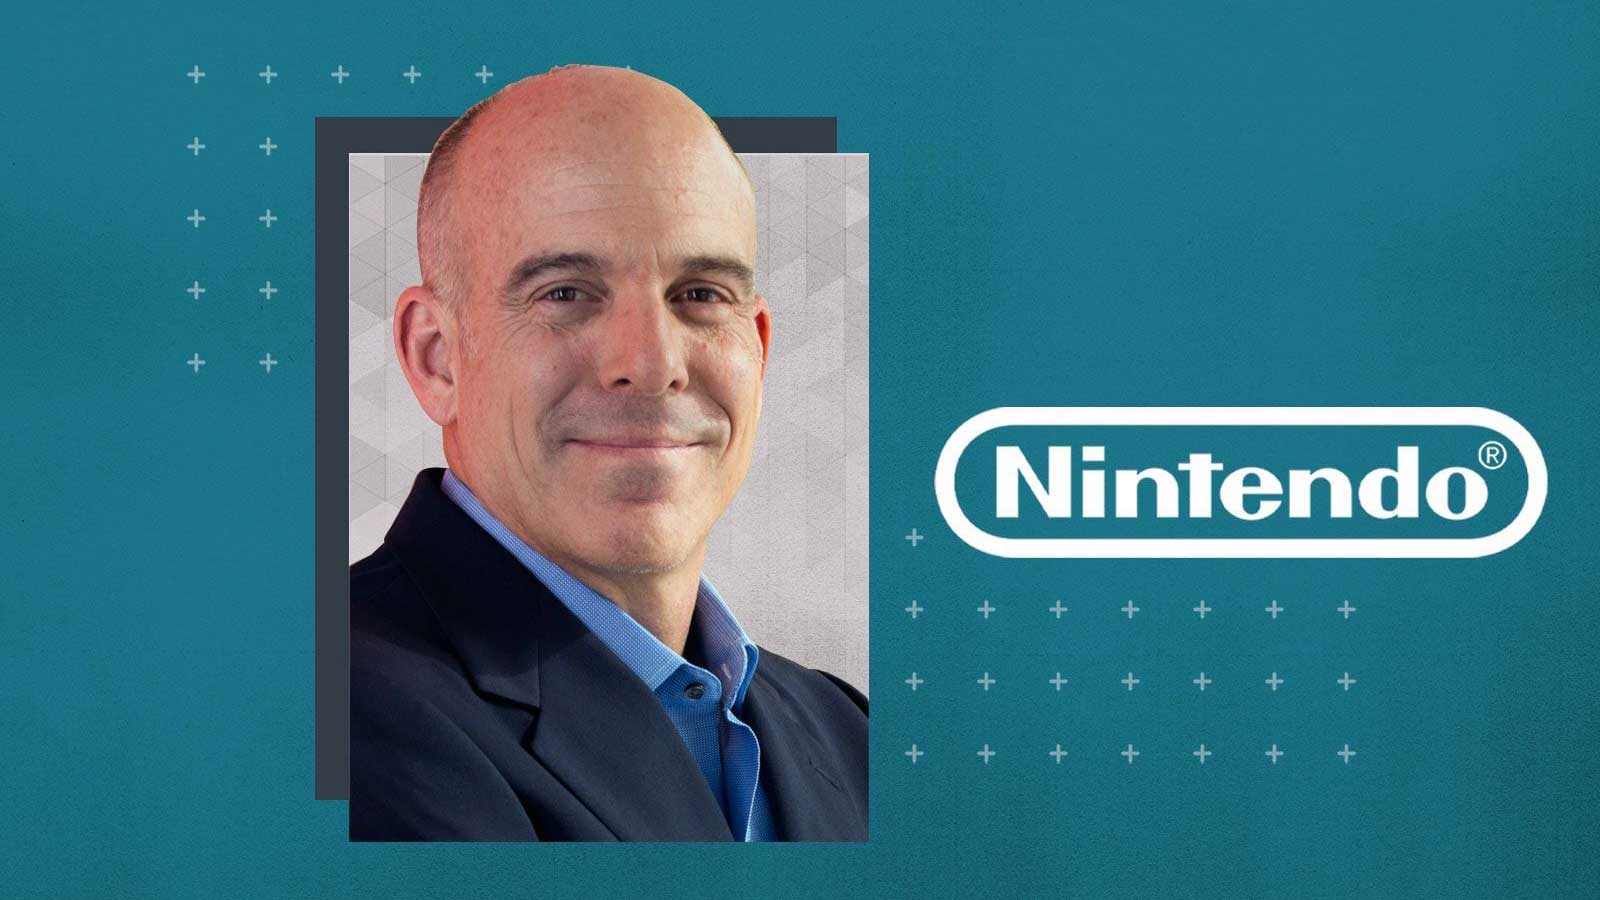 داگ بوزر، رئیس نینتندو آمریکا روی بک گراند آبی کنار لوگو شرکت Nintendo